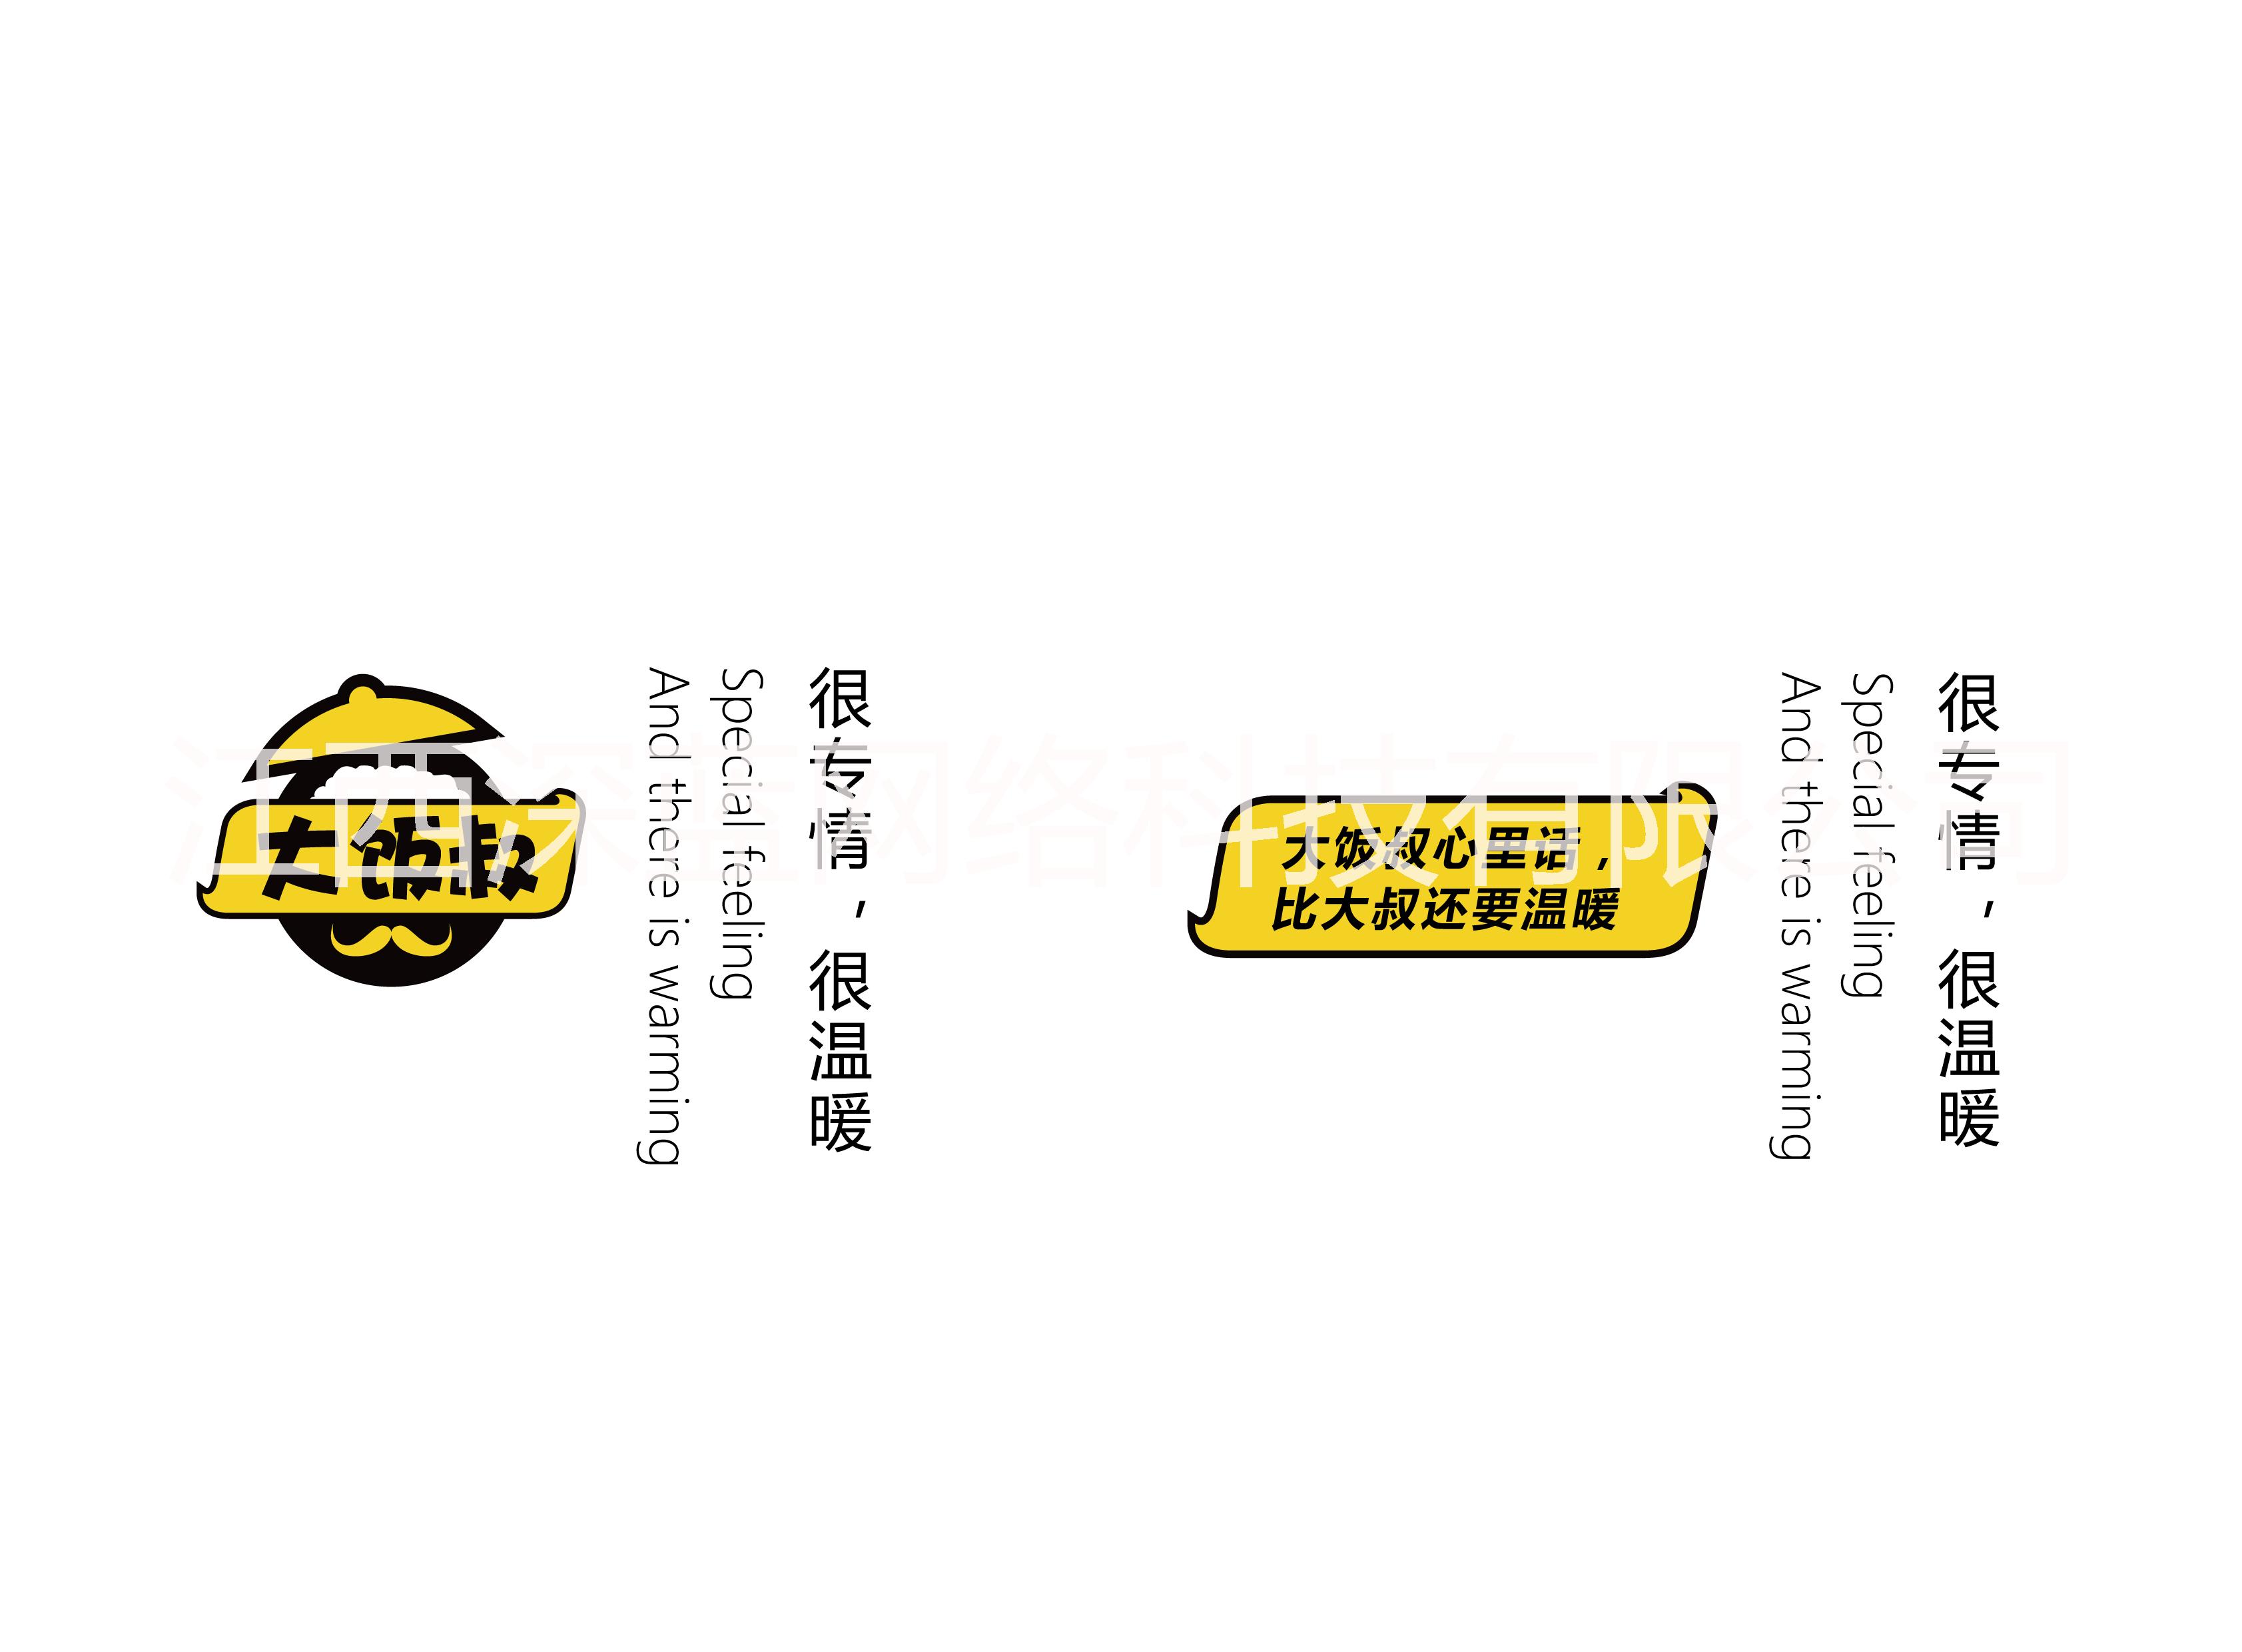 九江logo设计找江西深蓝 九江logo设计江西深蓝品牌